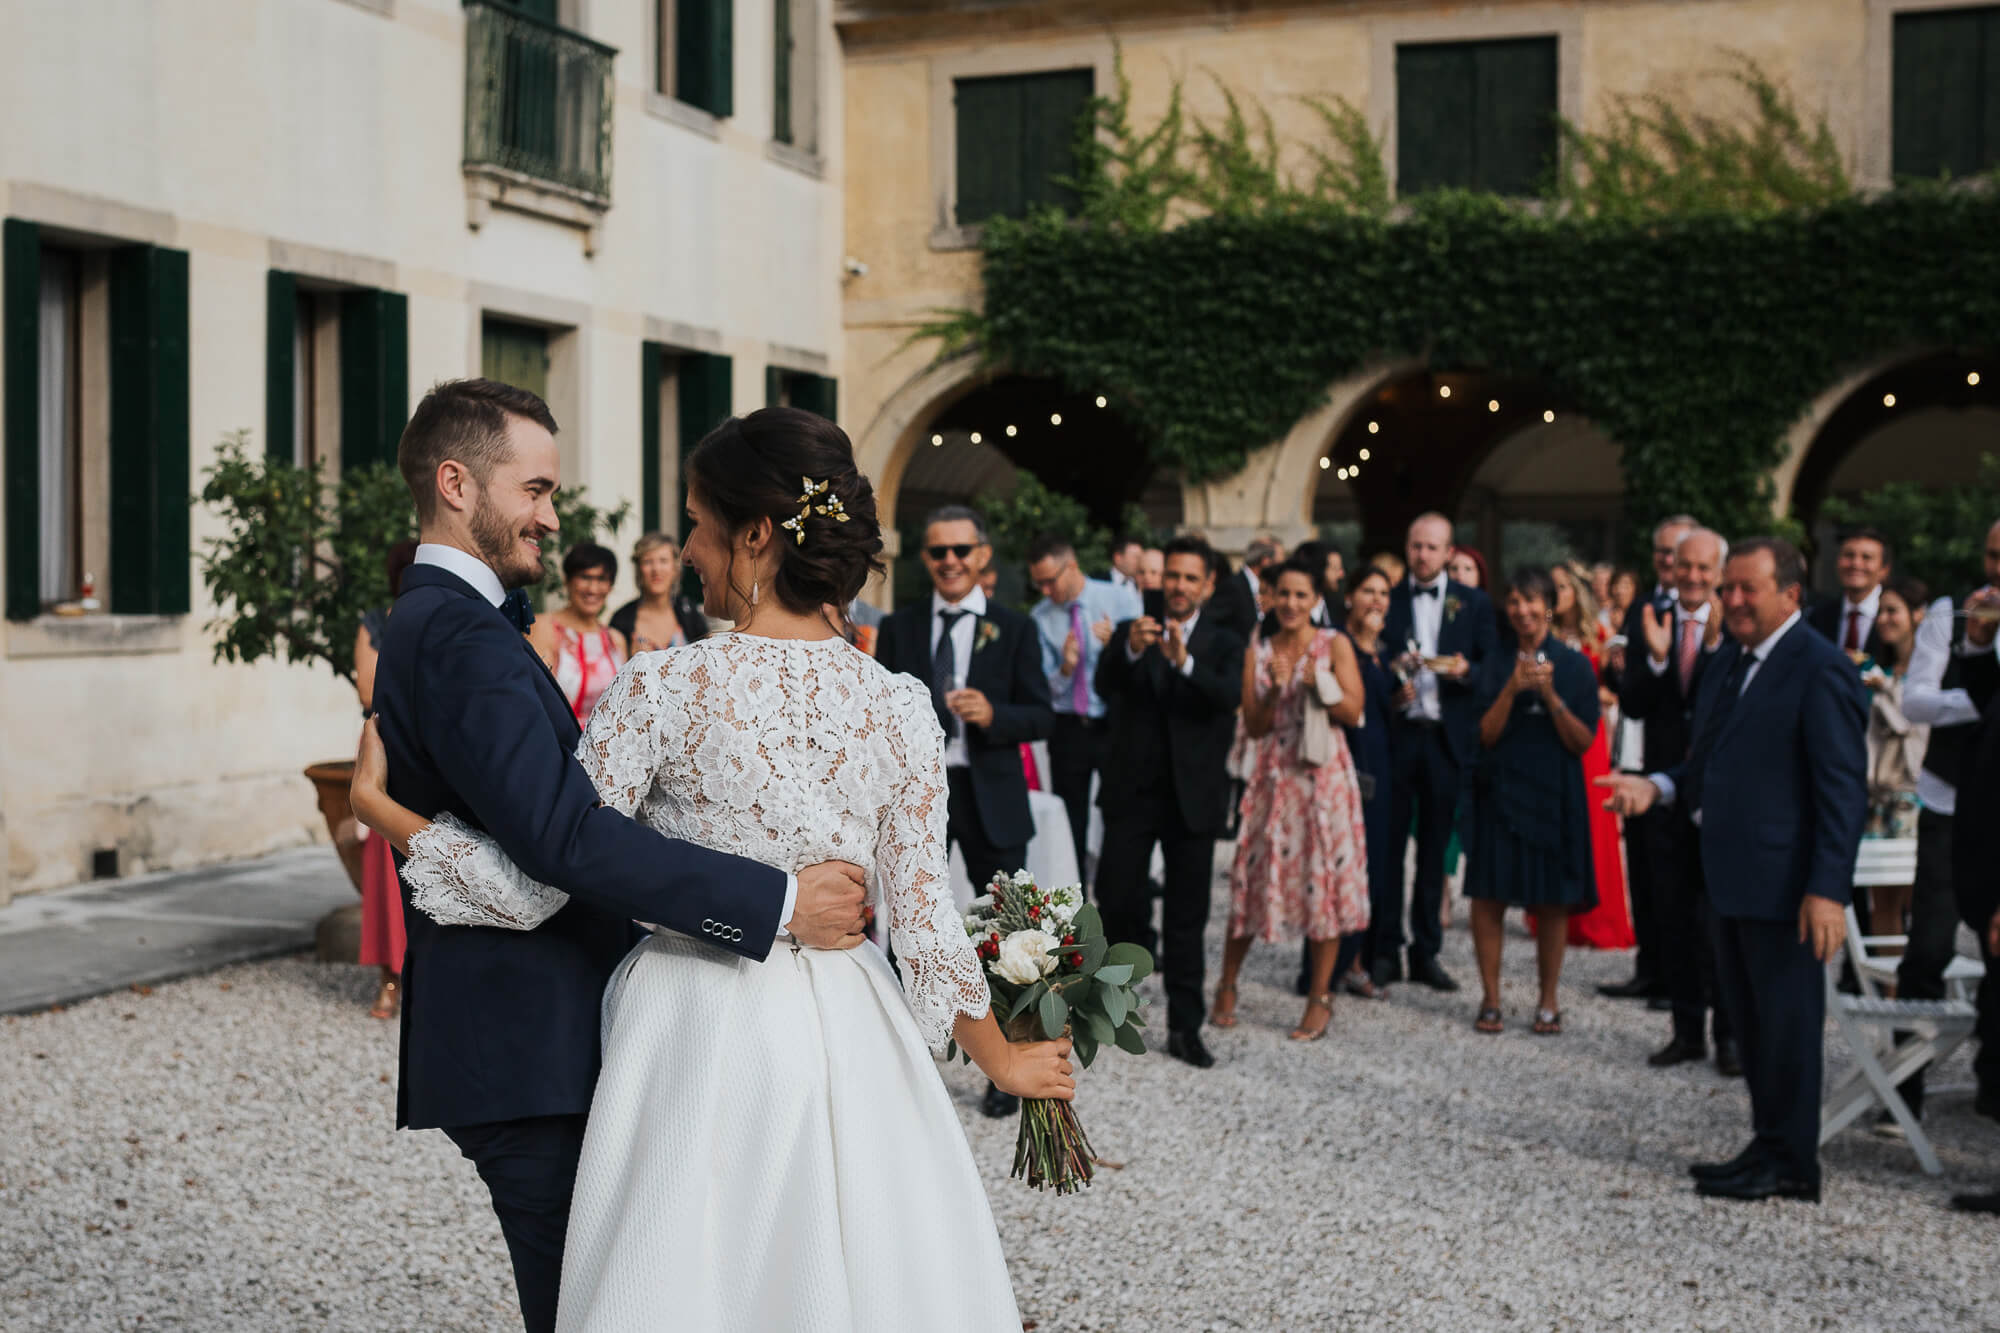 Servizio Fotografico di Matrimonio a Treviso, location Villa Lucheschi. Ecco Deborah e Niklas. Michelino Studio, fotografi professionisti di matrimonio in Veneto.